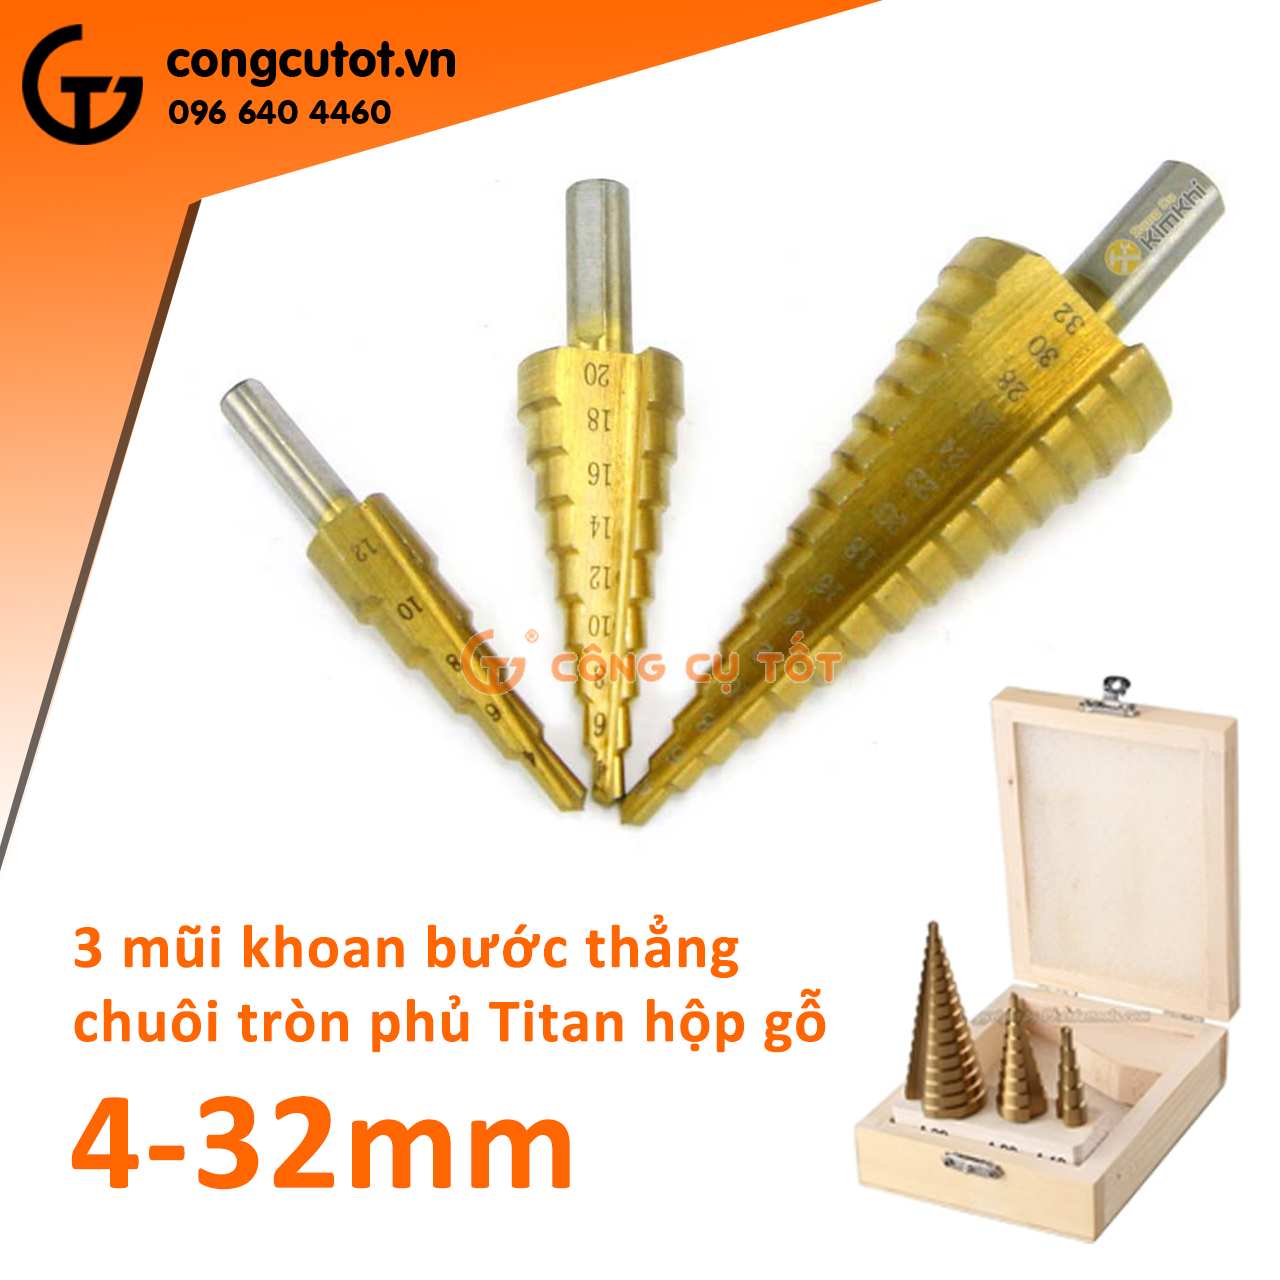 Bộ sản phẩm 3 mũi khoan tháp bước thẳng chuôi tròn kích thước từ 4-32 mm được đặt trong hộp gỗ